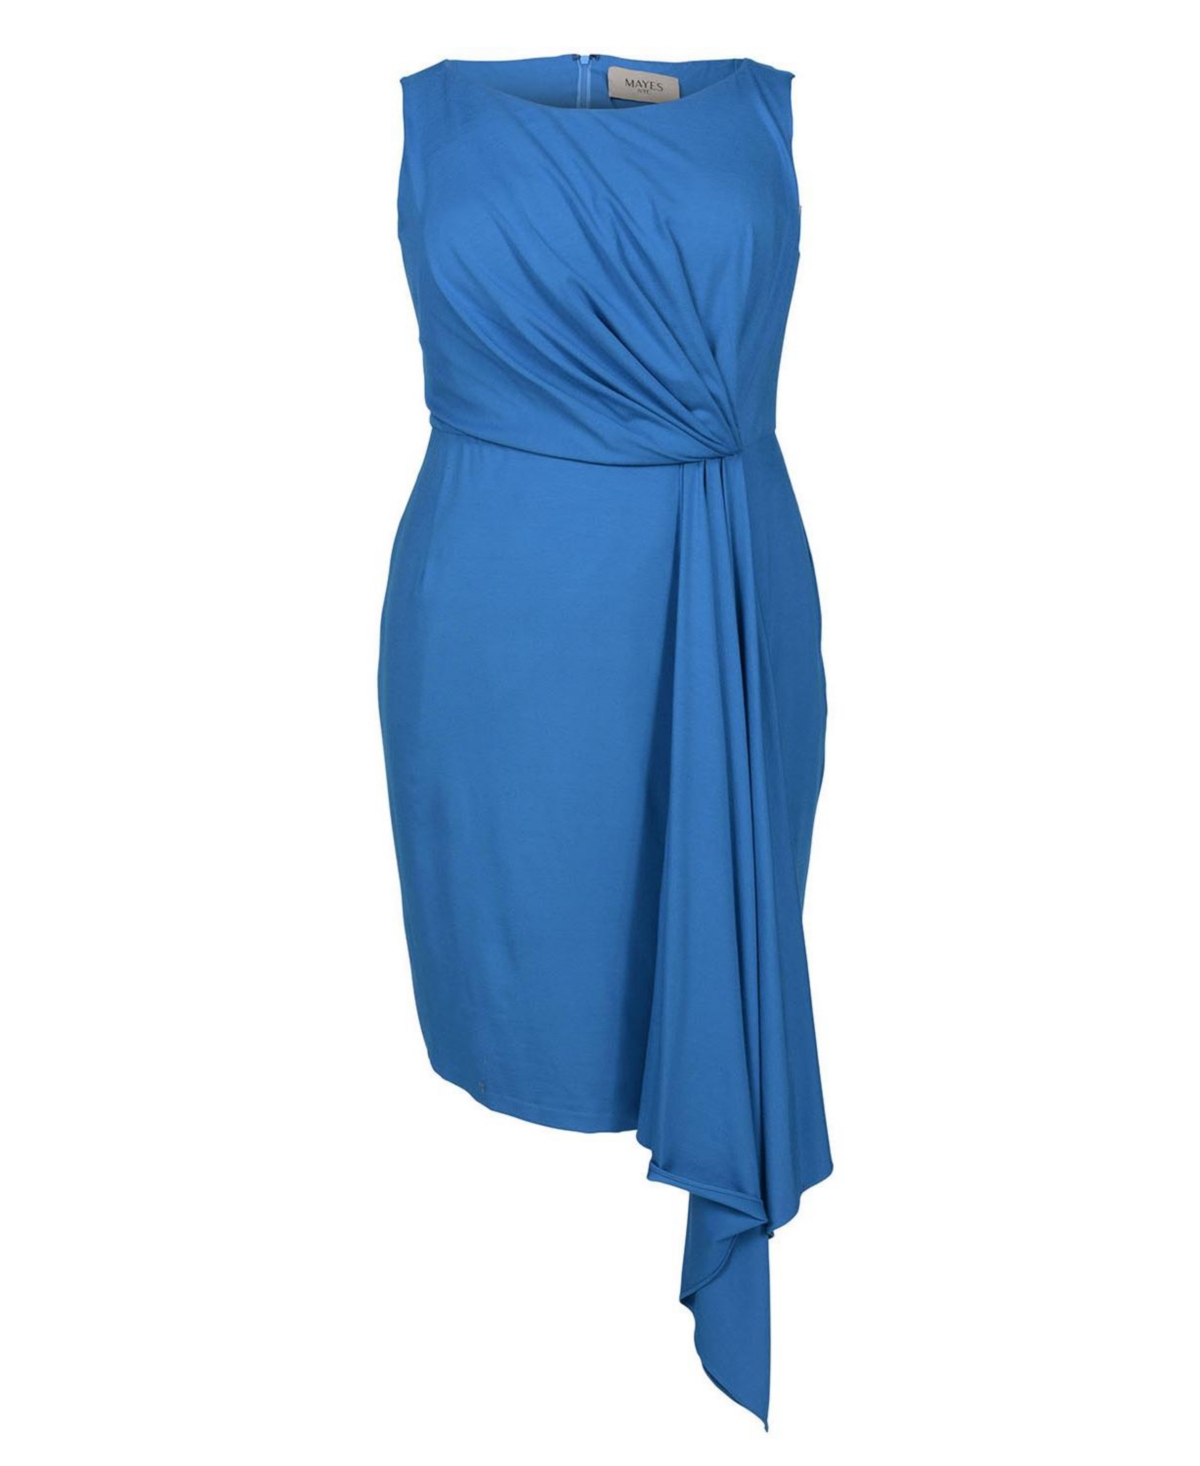 - Women's Plus Size Adele Sheath Dress - Mykonos blue